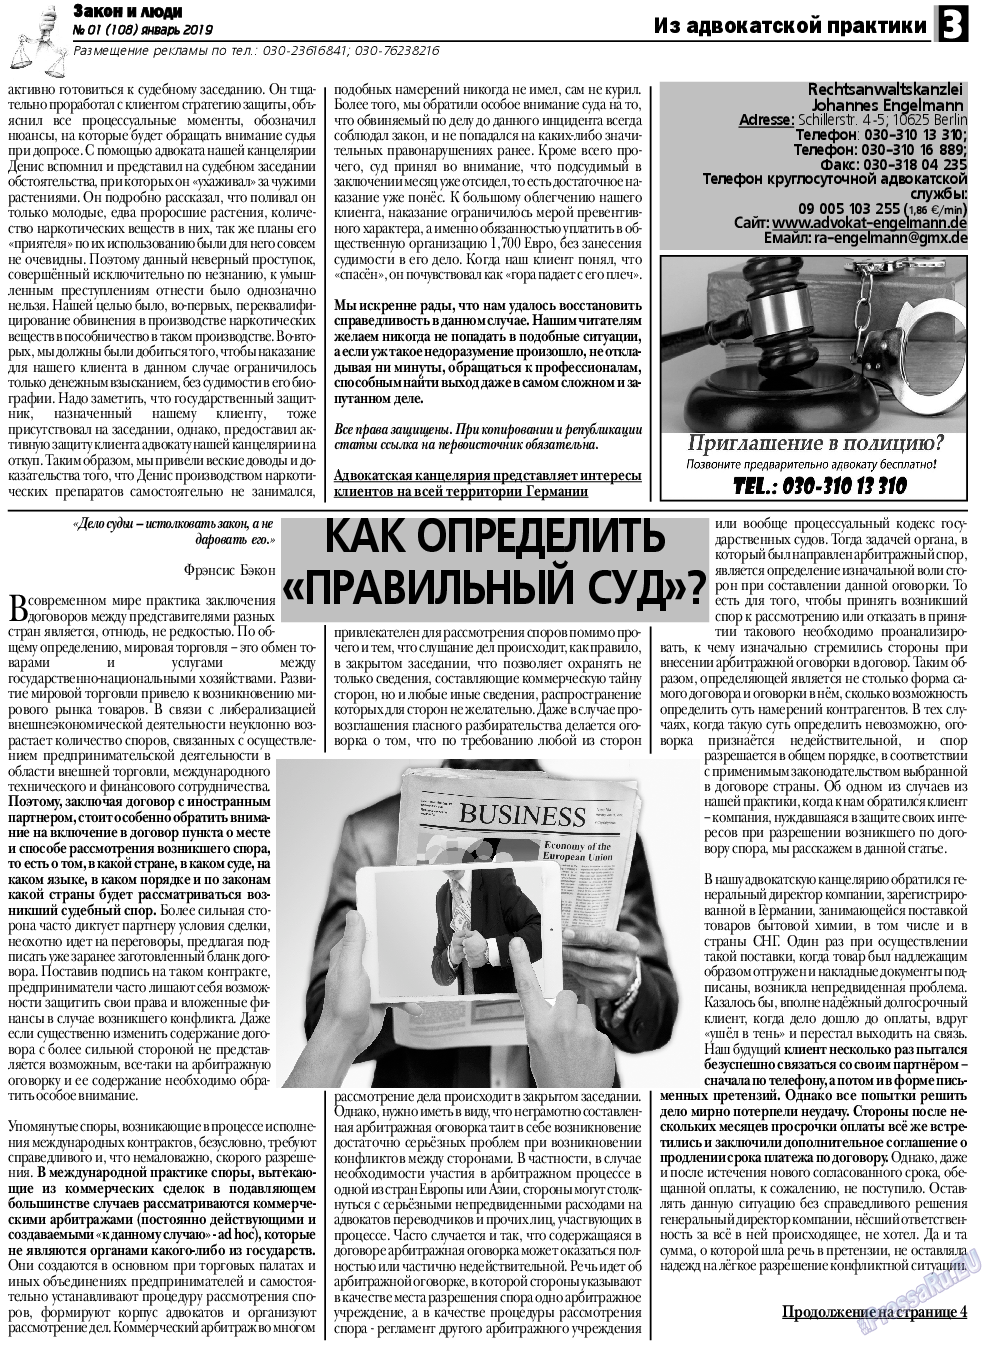 Закон и люди, газета. 2019 №1 стр.3